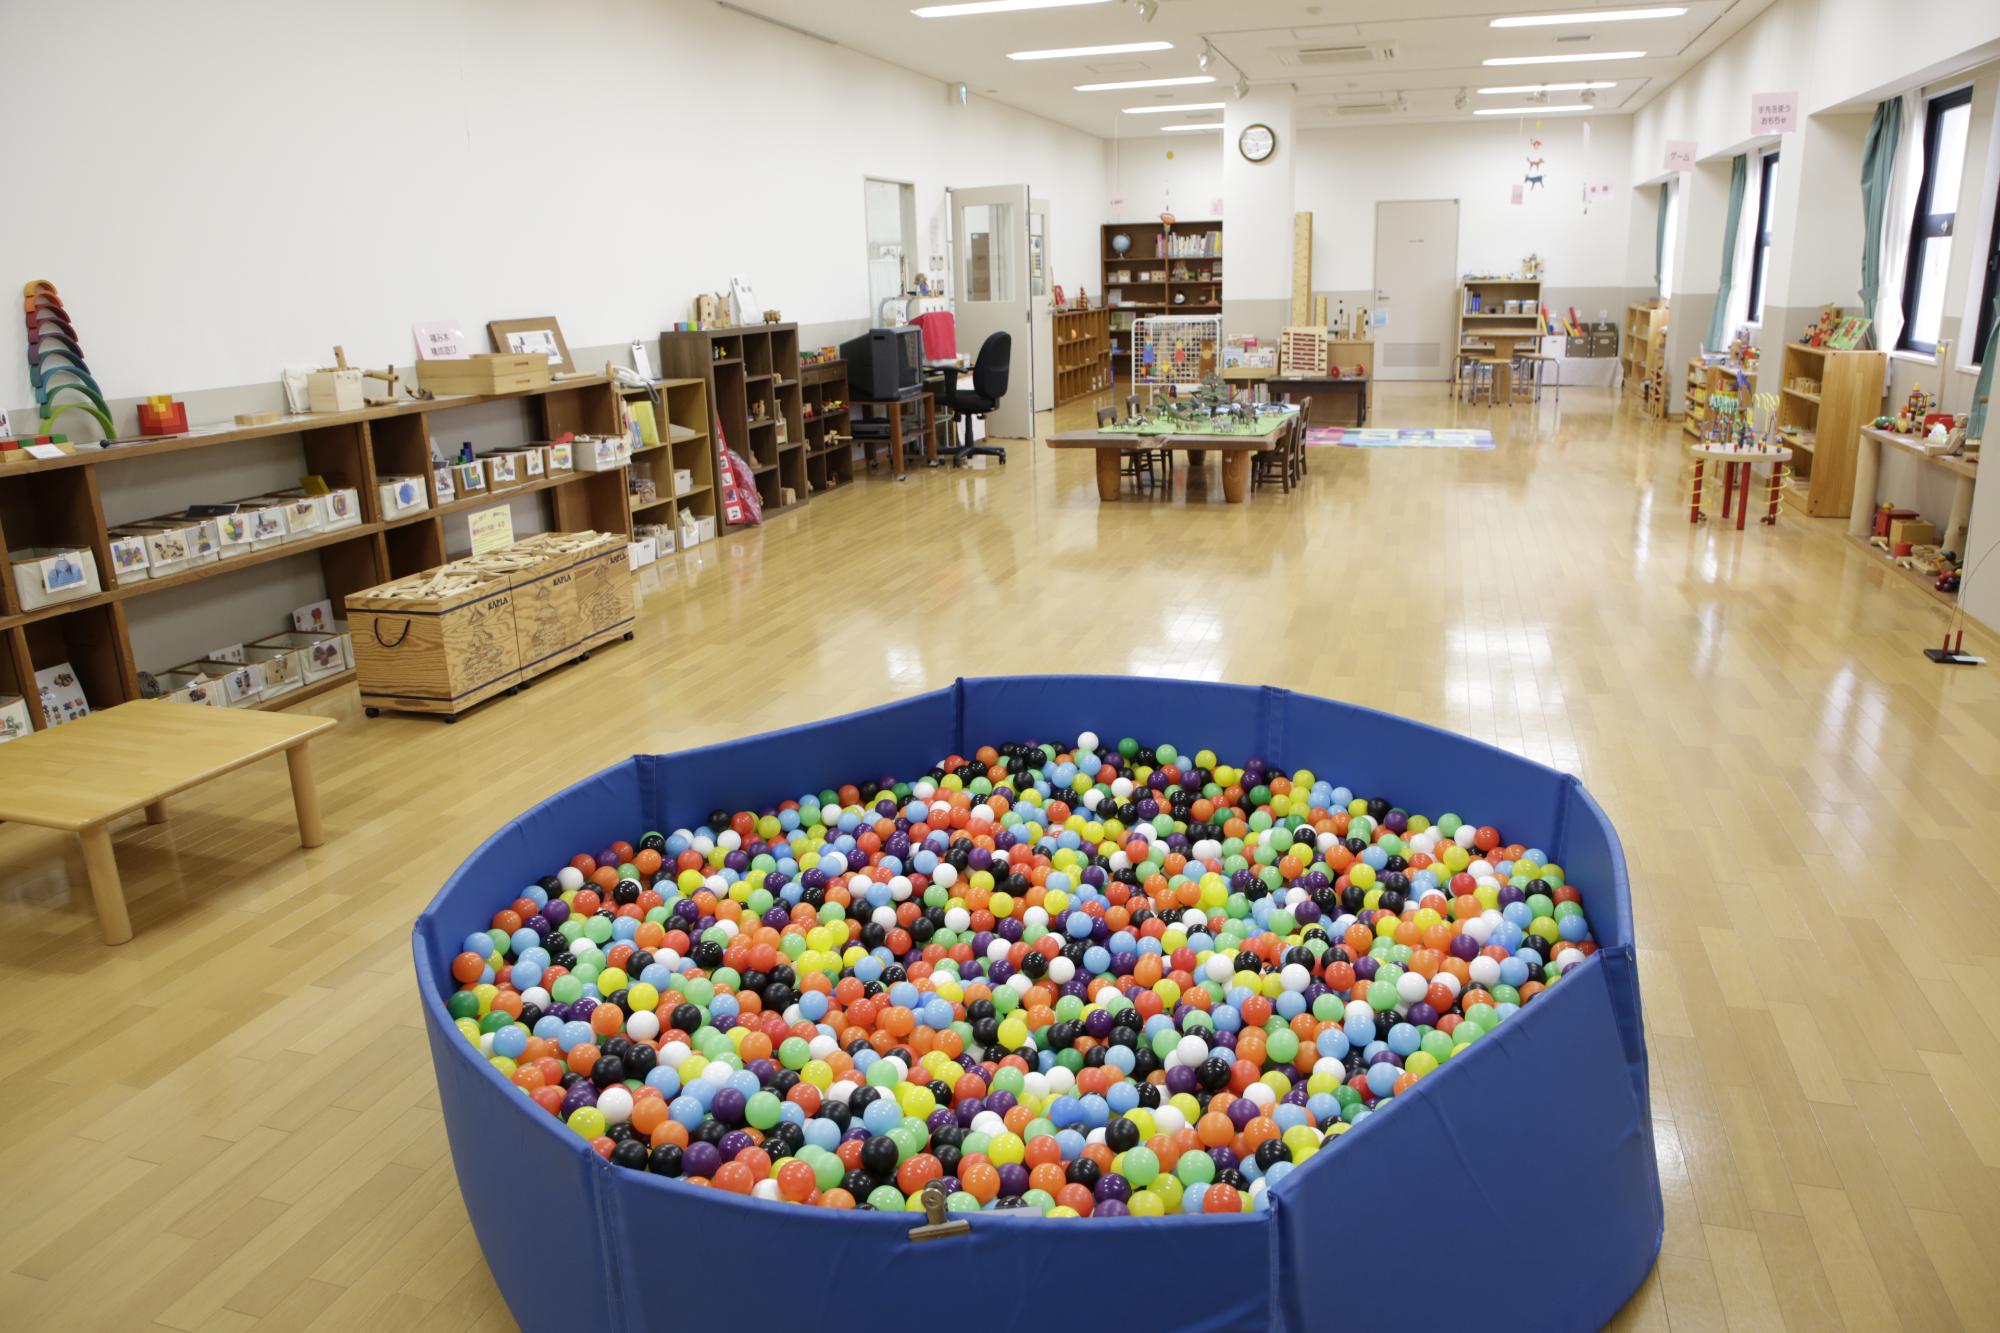 子供センター内部の様子を写した写真。手前にボールプールが置かれており、奥には子供用の机やおもちゃが置かれている。